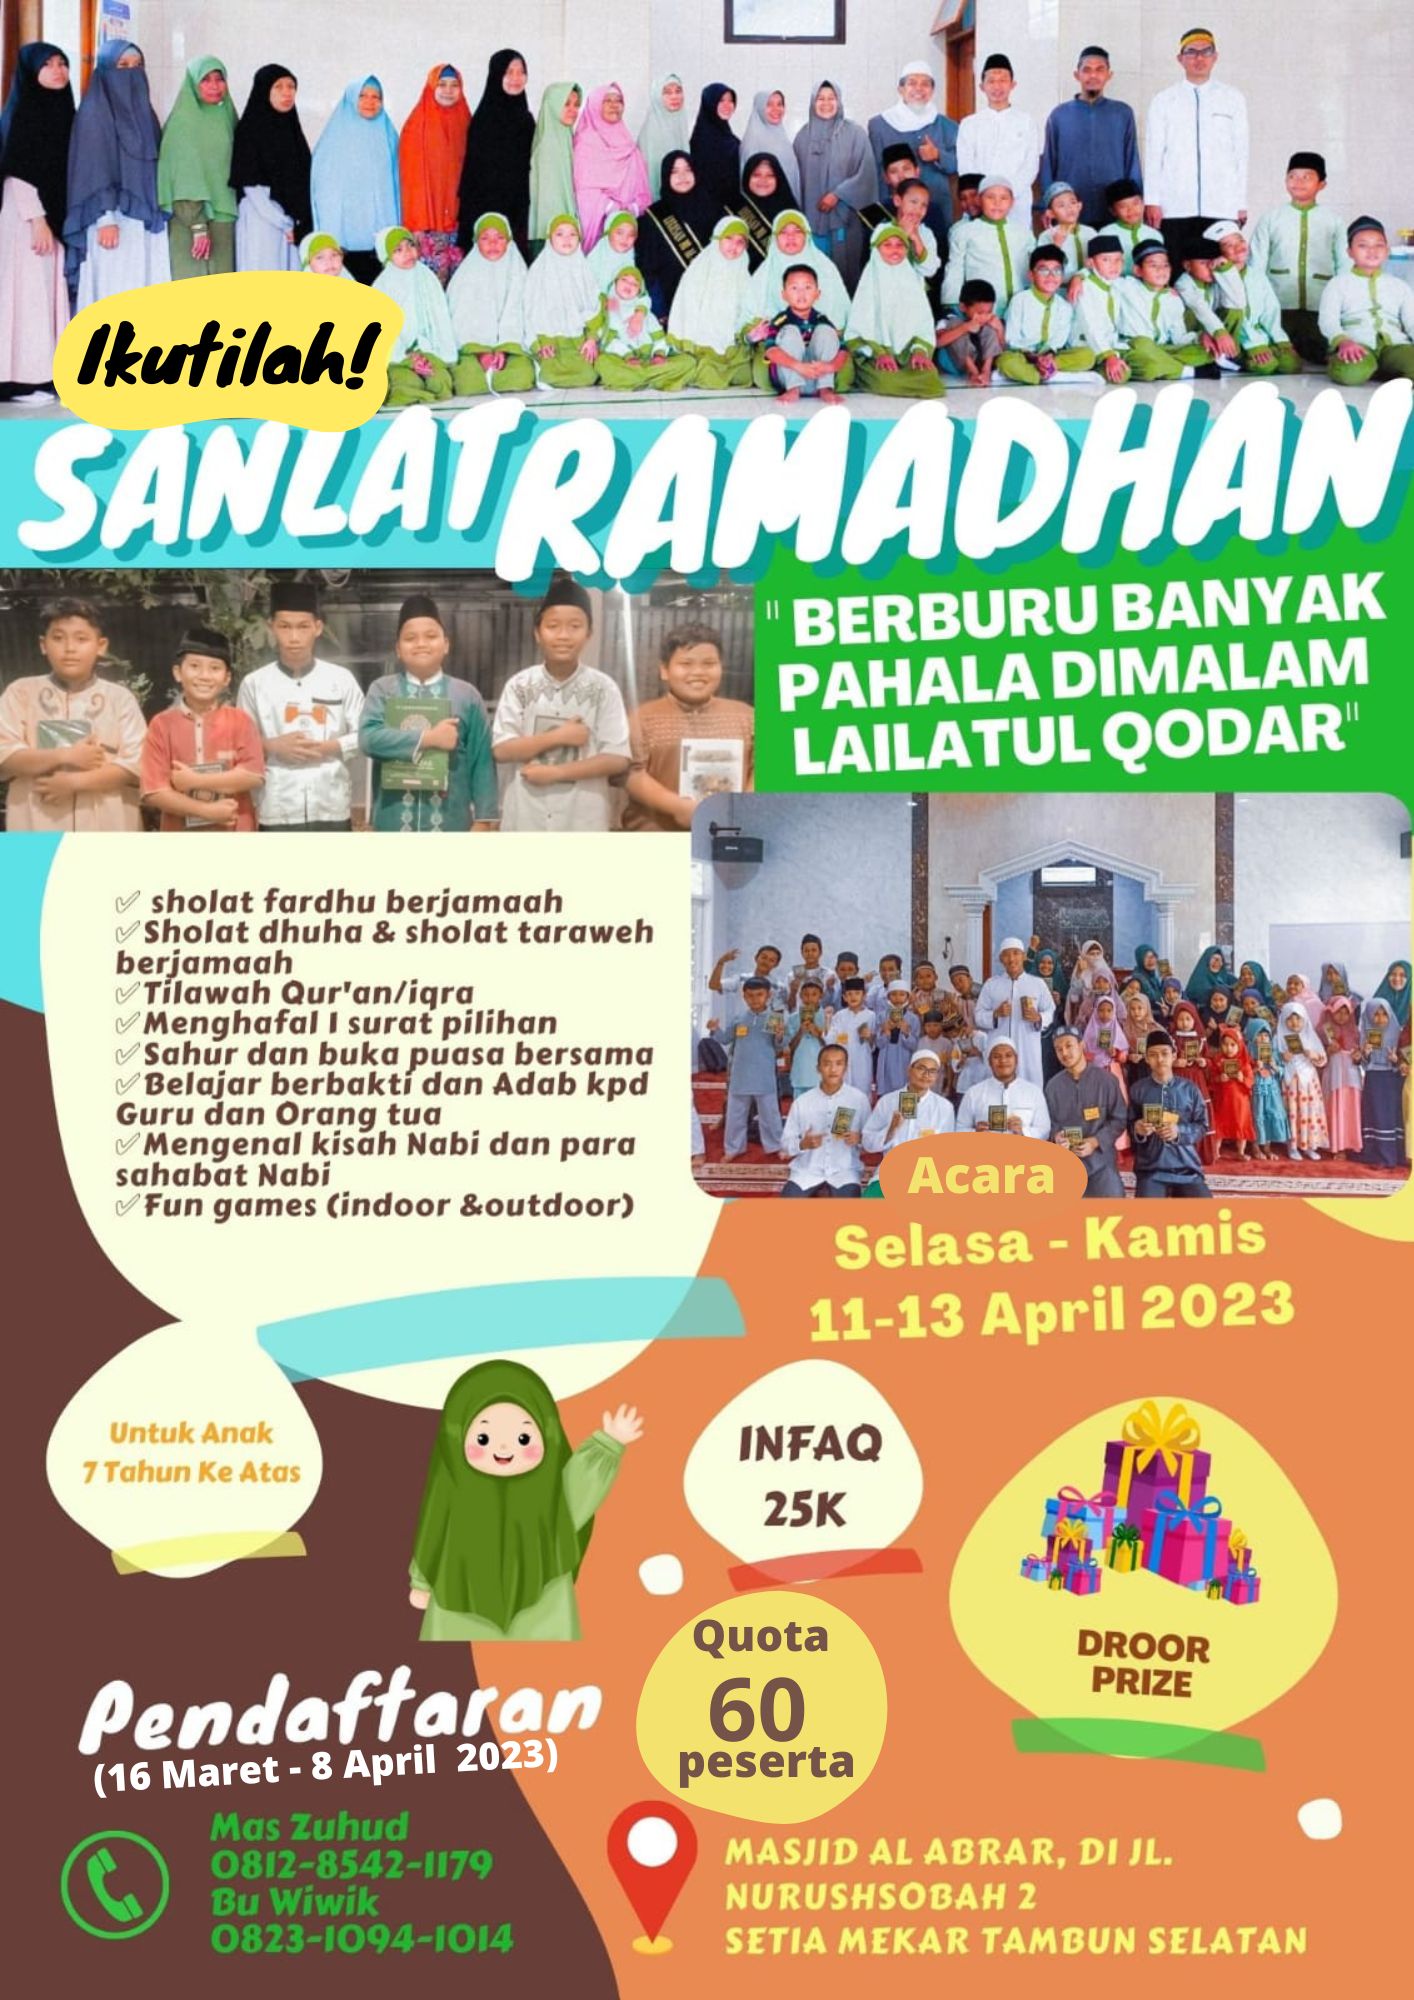 Sanlat Ramadhan di Bekasi (Pesantren Kilat Anak Bersama Santri Pondok )